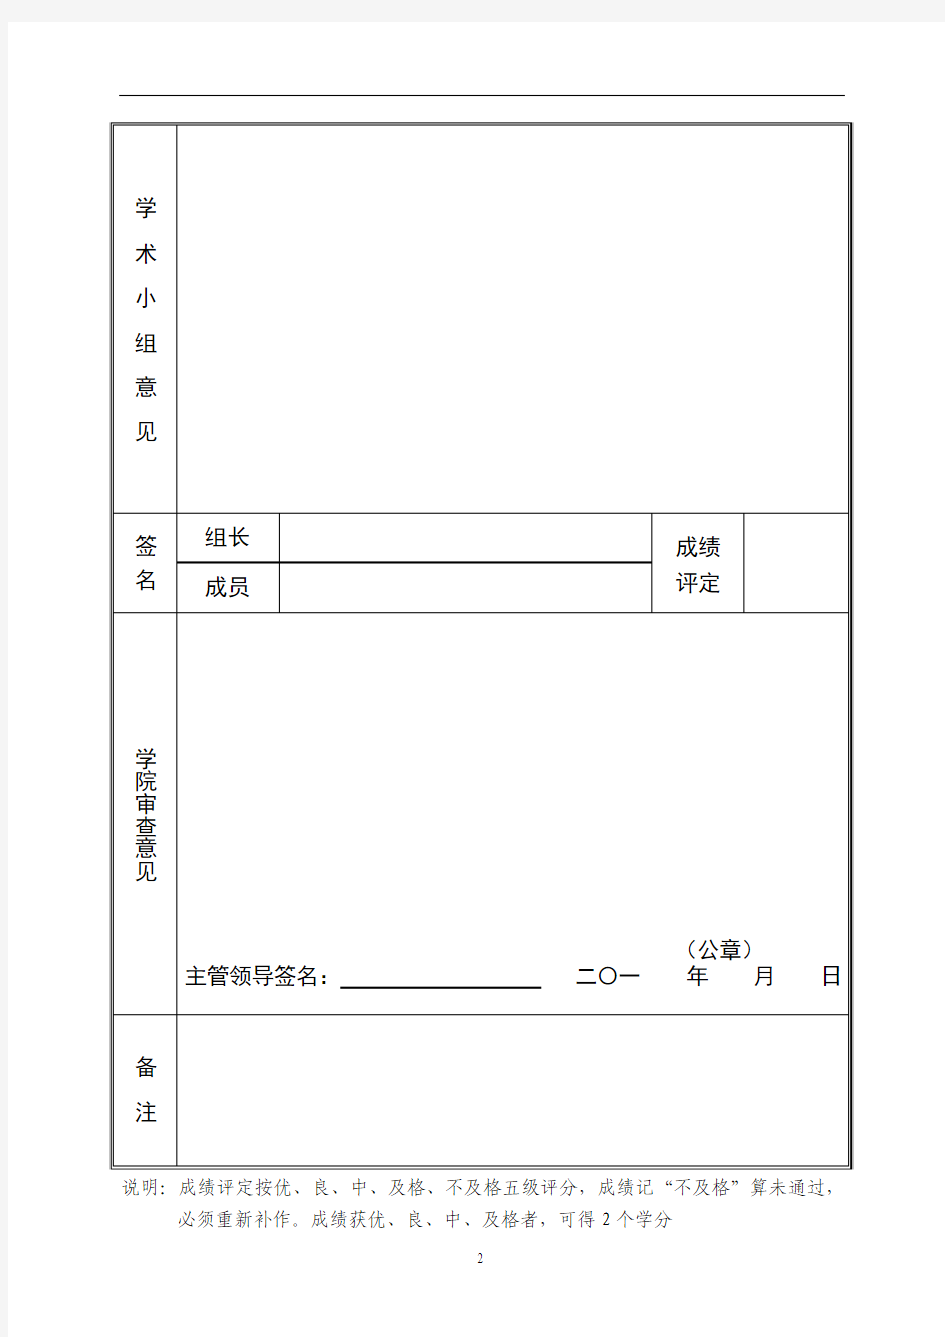 湖南大学硕士研究生学术活动考核表1份(A4双面打印)